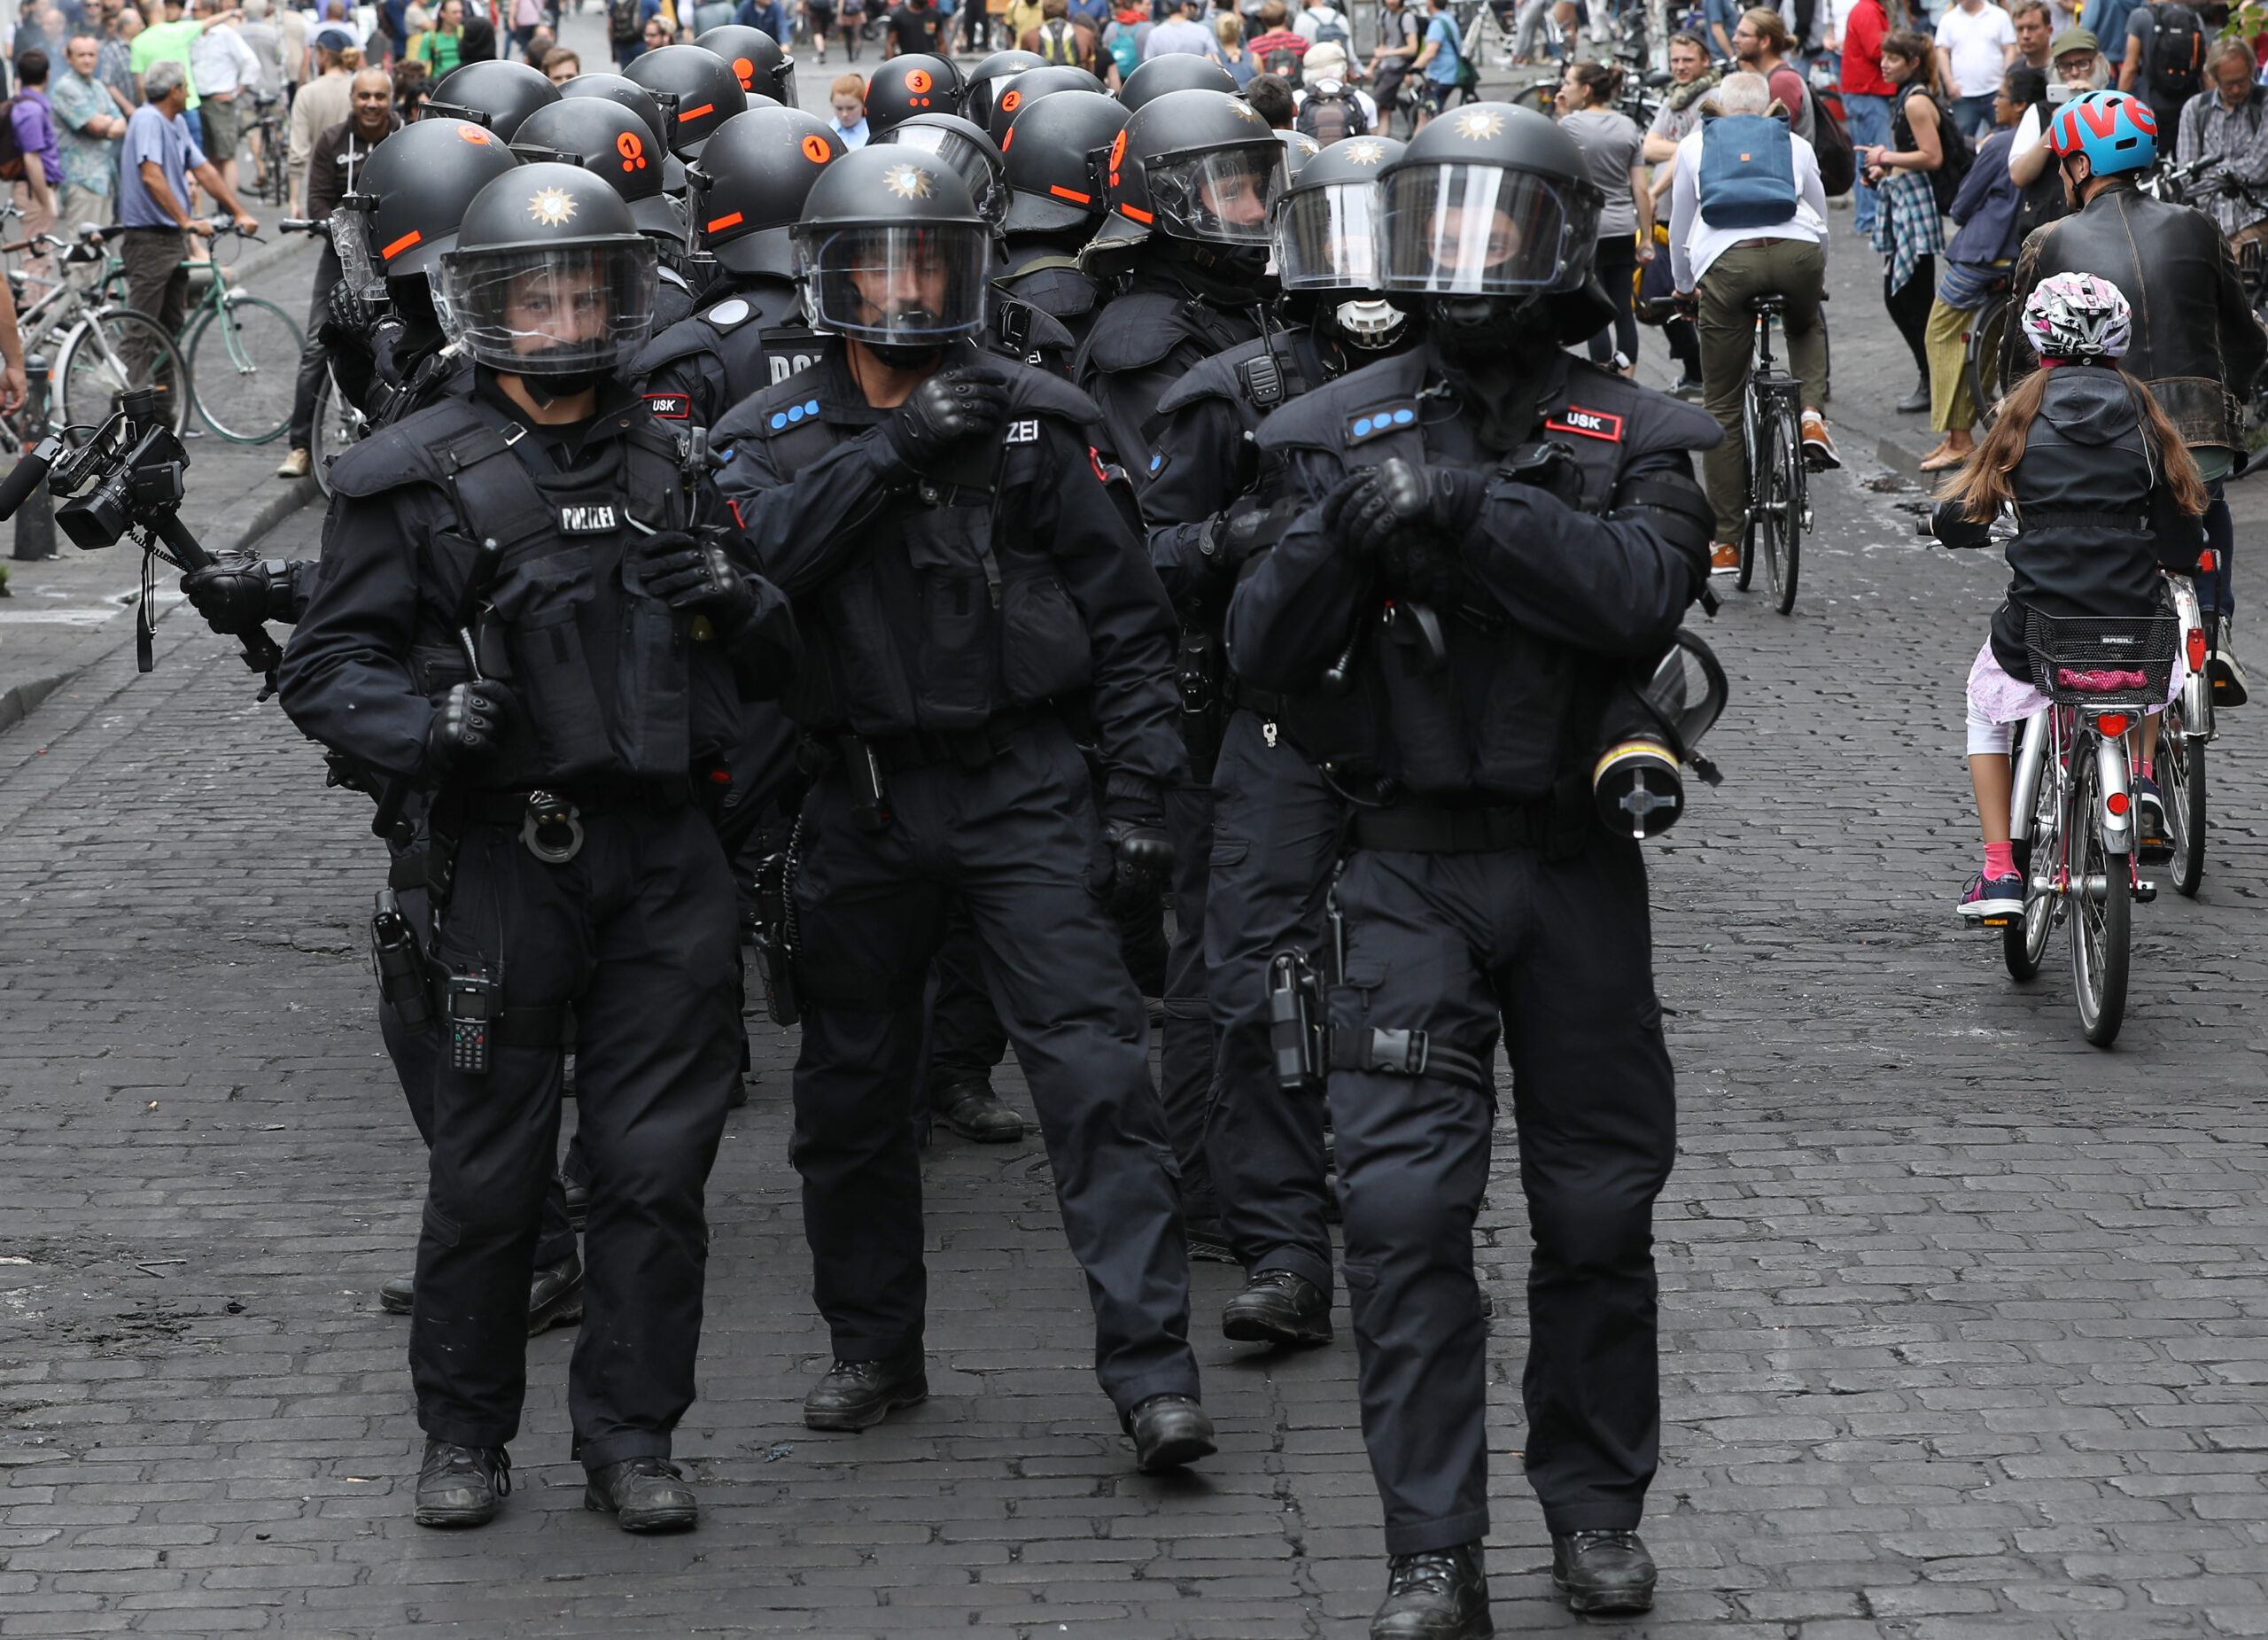 Polizisten mit Helmen gehen während des G20-Gipfels im Schanzenviertel zwischen Passanten und Radfahrern durch eine Straße. (Archivbild)